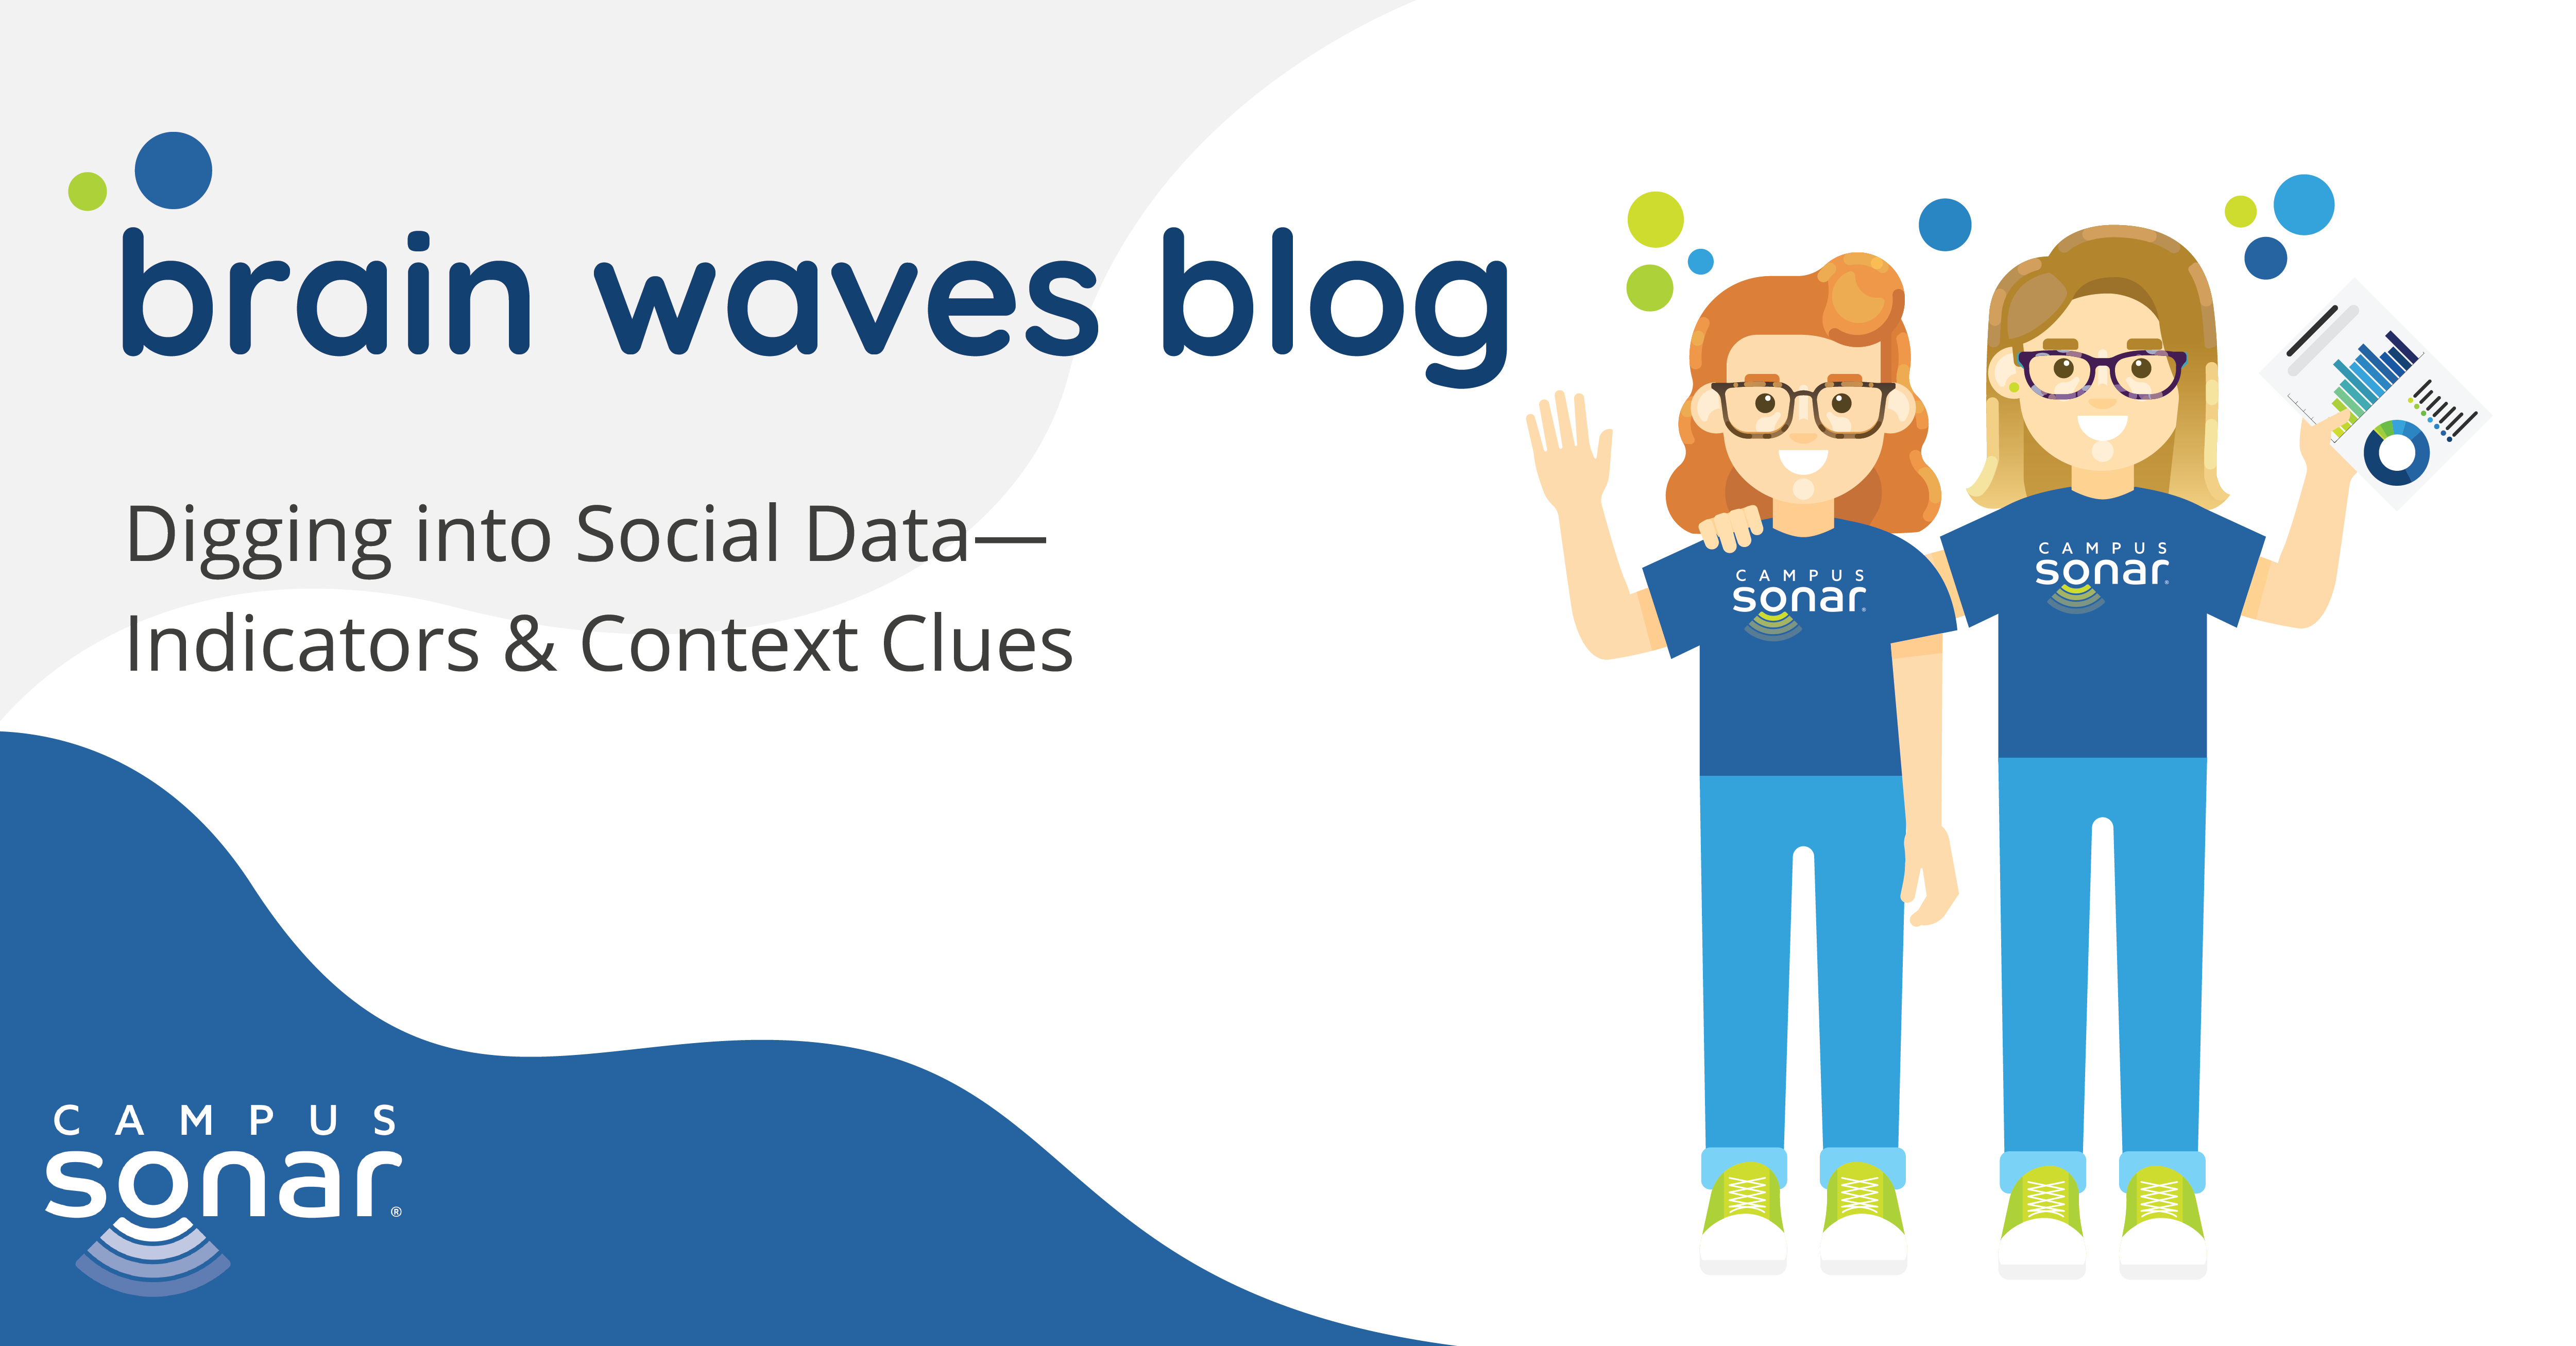 Digging into Social Data—Indicators & Context Clues